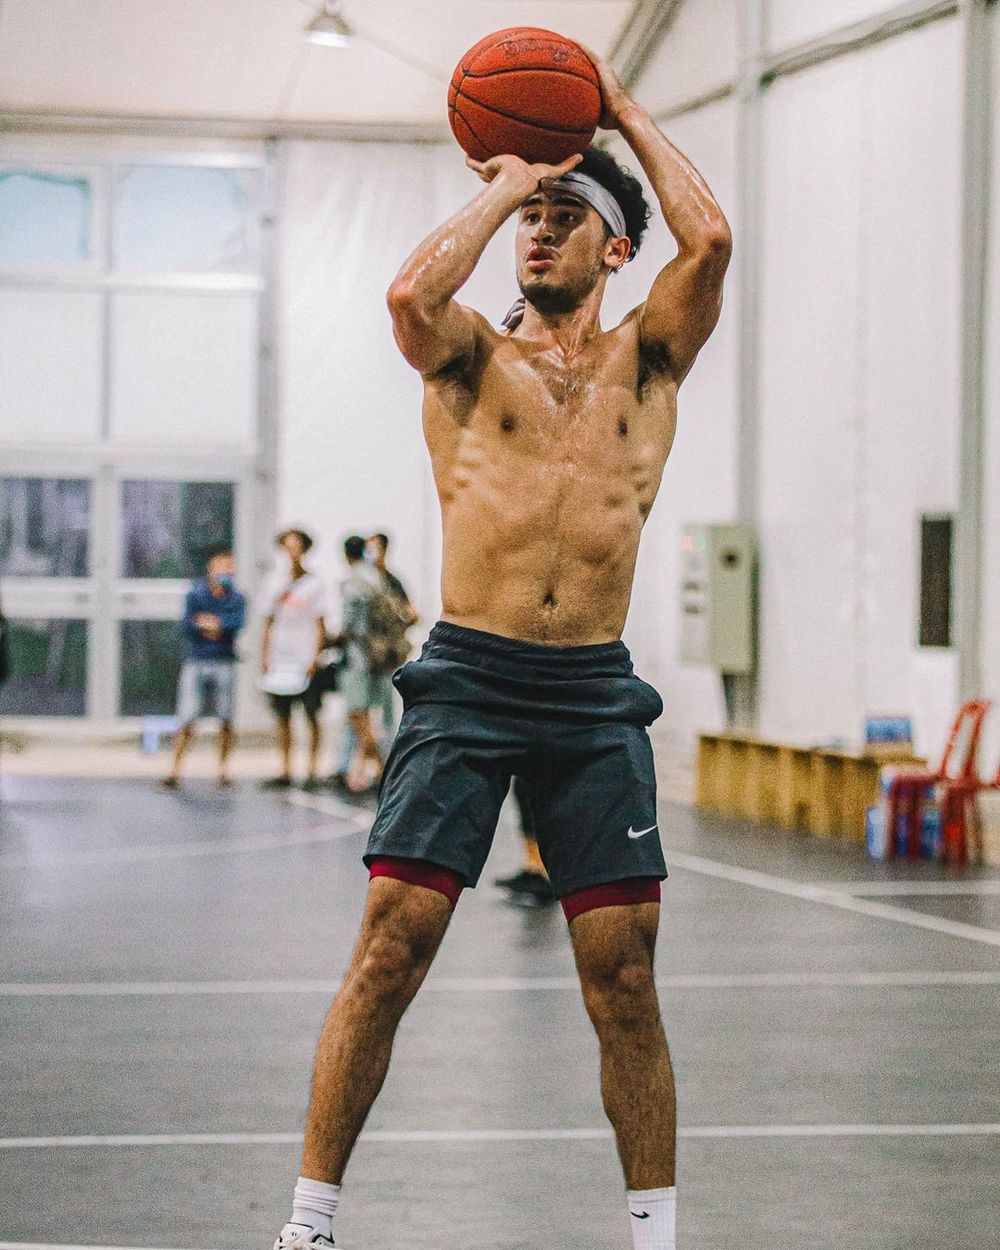  
Christian Juzang sở hữu chiều cao 1m88 cùng thân hình 6 múi và gương mặt lai Tây điển trai. (Nguồn: Instagram nv)